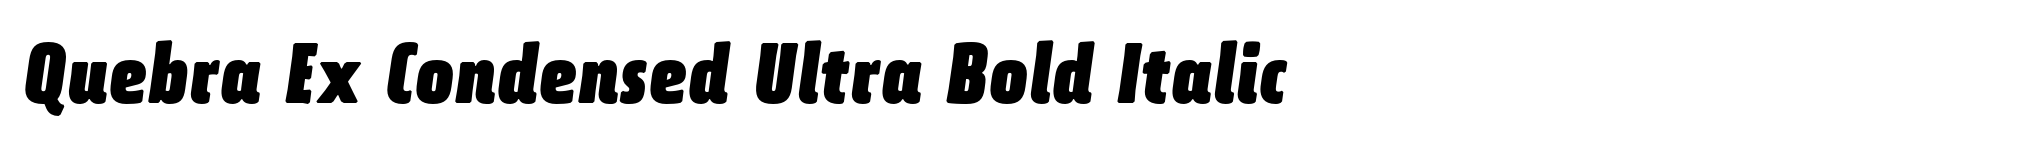 Quebra Ex Condensed Ultra Bold Italic image